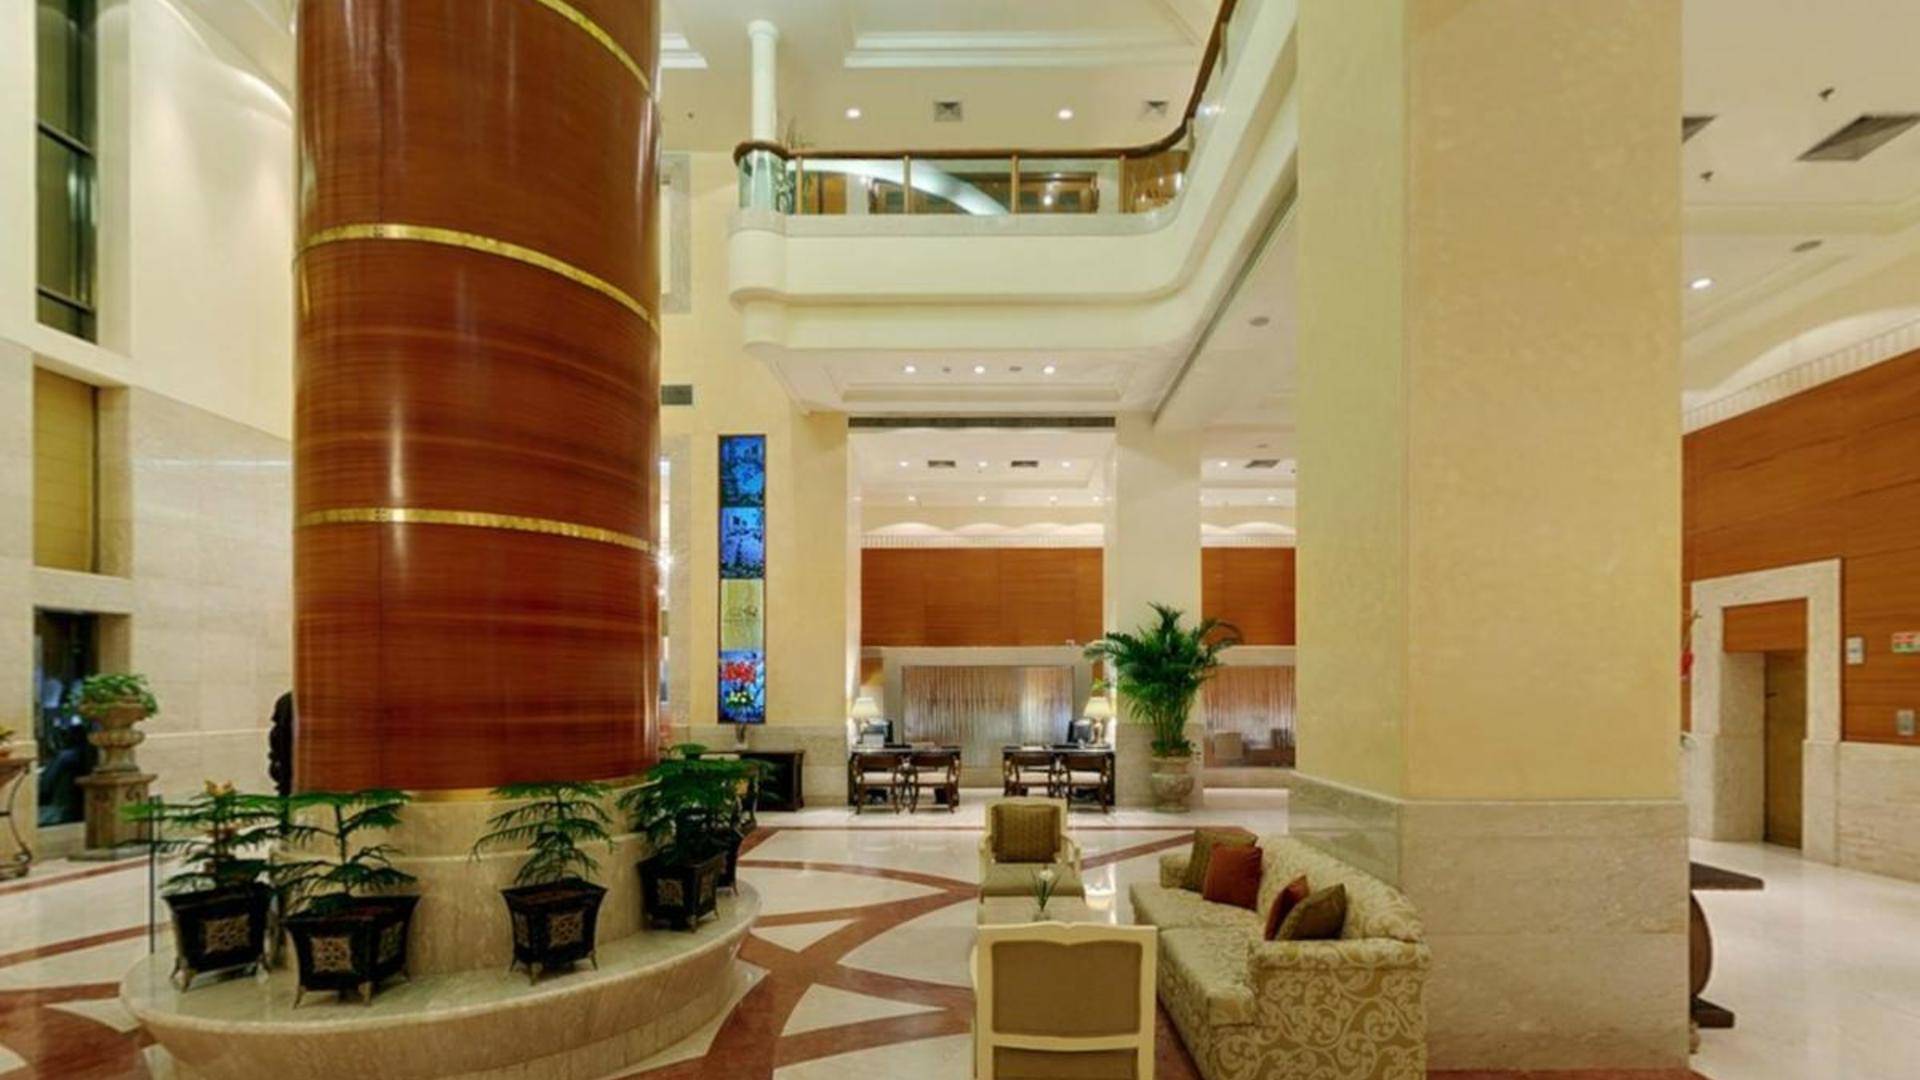 Отель svelte hotel & personal suite 5* (дели индия), описание отеля svelte hotel & personal suite в 2022 году, фото, забронировать отель svelte hotel & personal suite